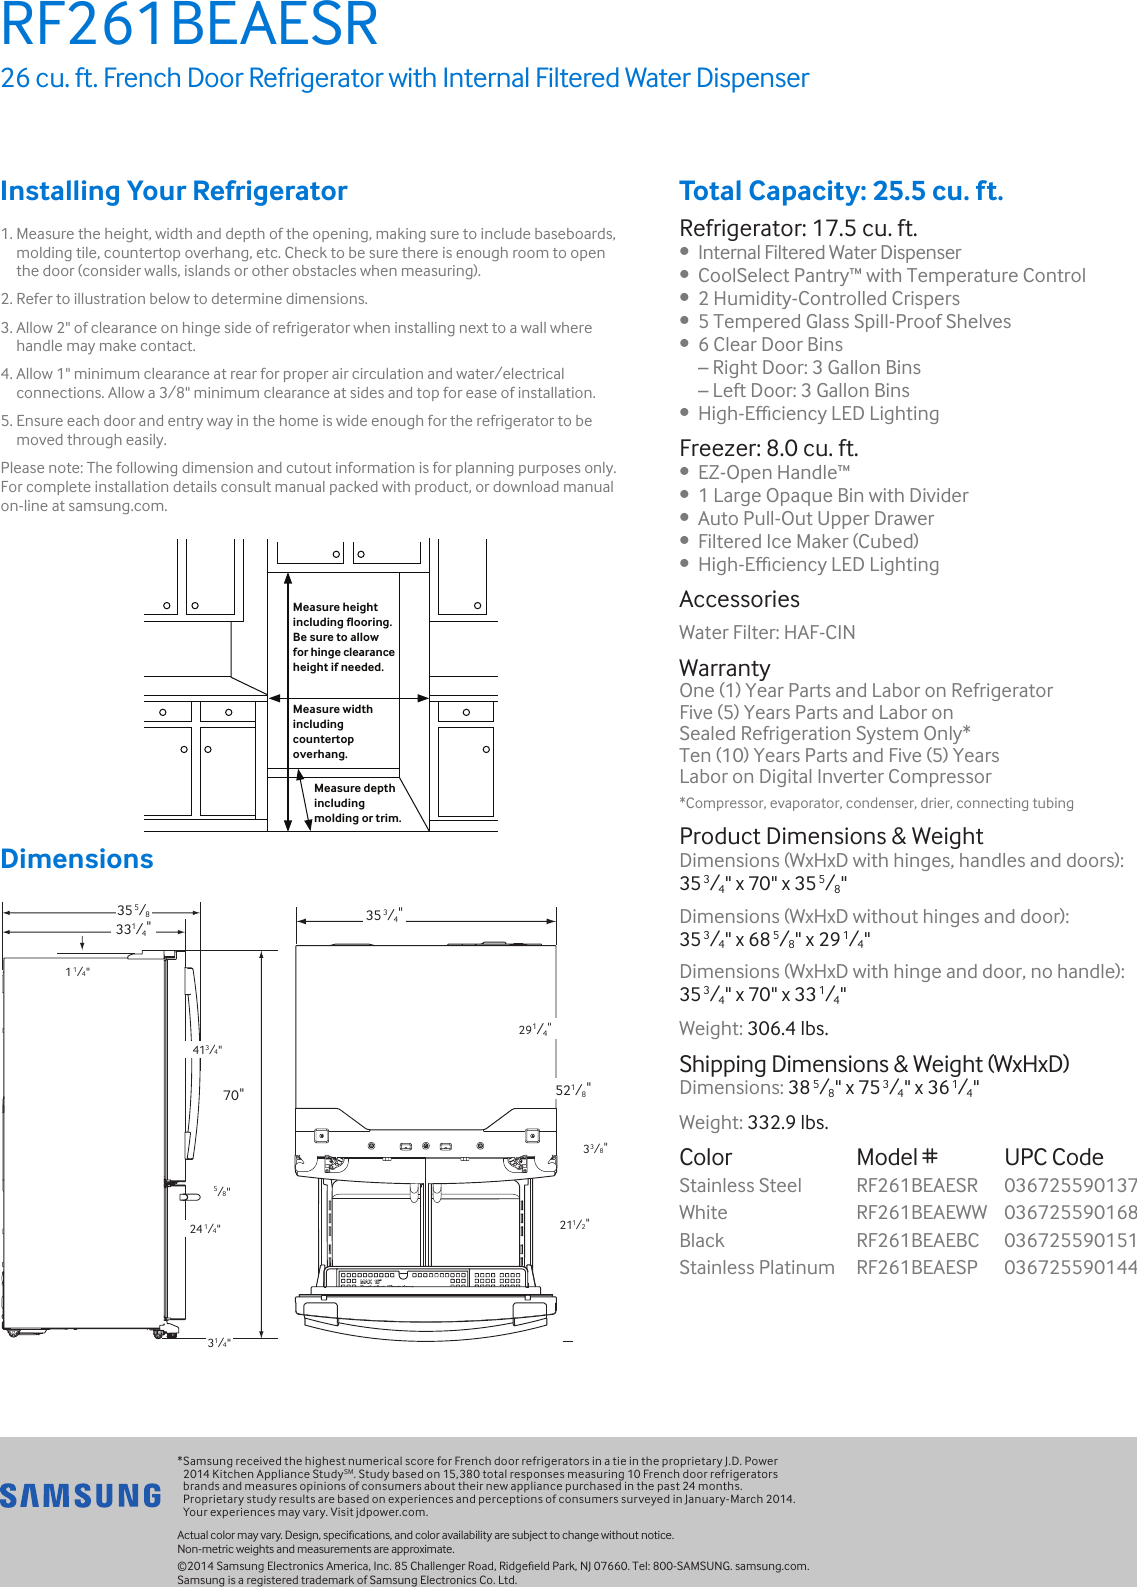 Page 2 of 2 - Samsung Samsung-Rf261Beaesr-Aa-Specification-Sheet-  Samsung-rf261beaesr-aa-specification-sheet